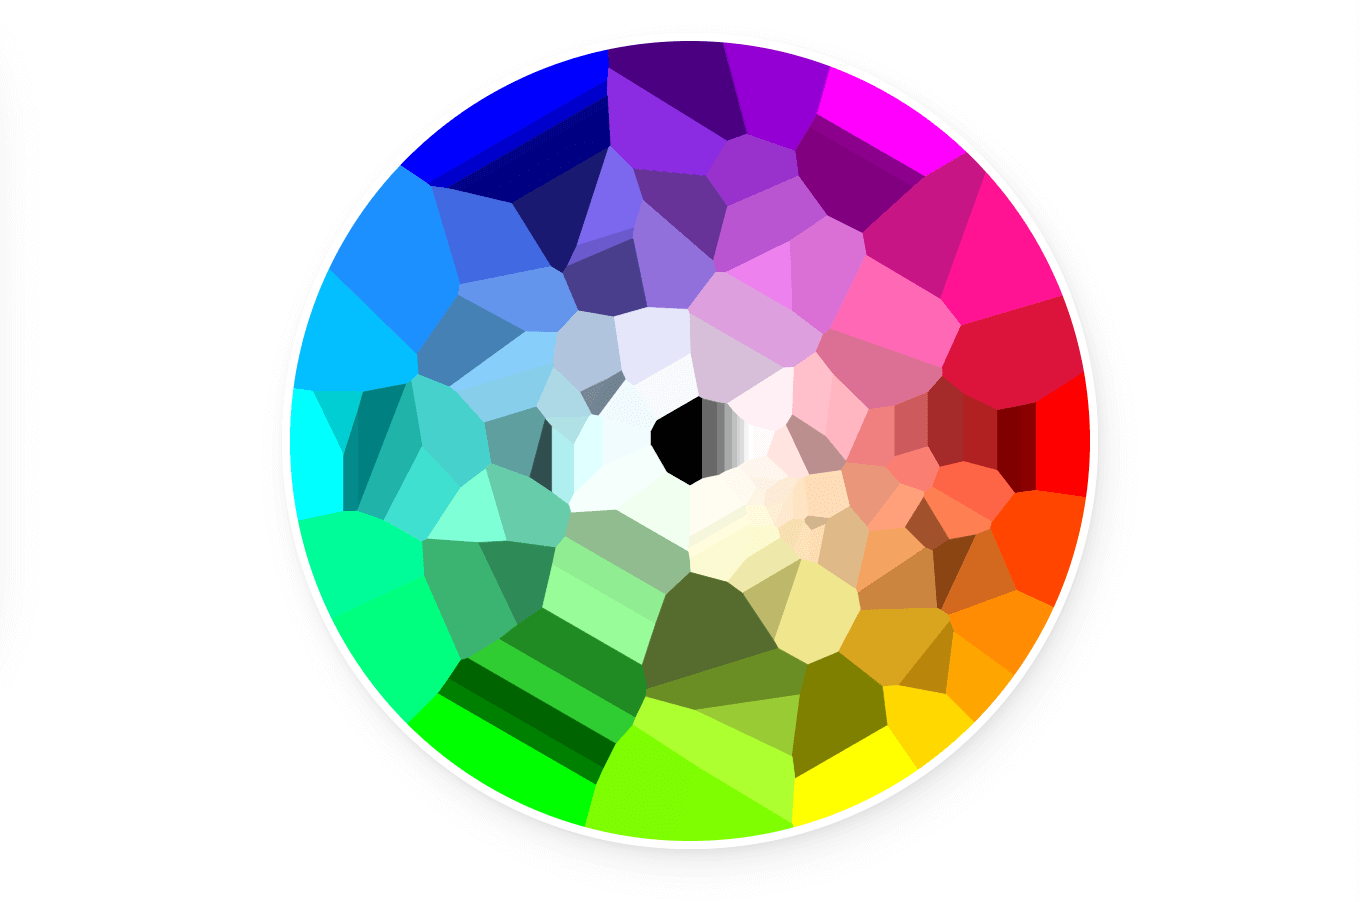 Демо со всеми 140 именованными цветами в одном круге